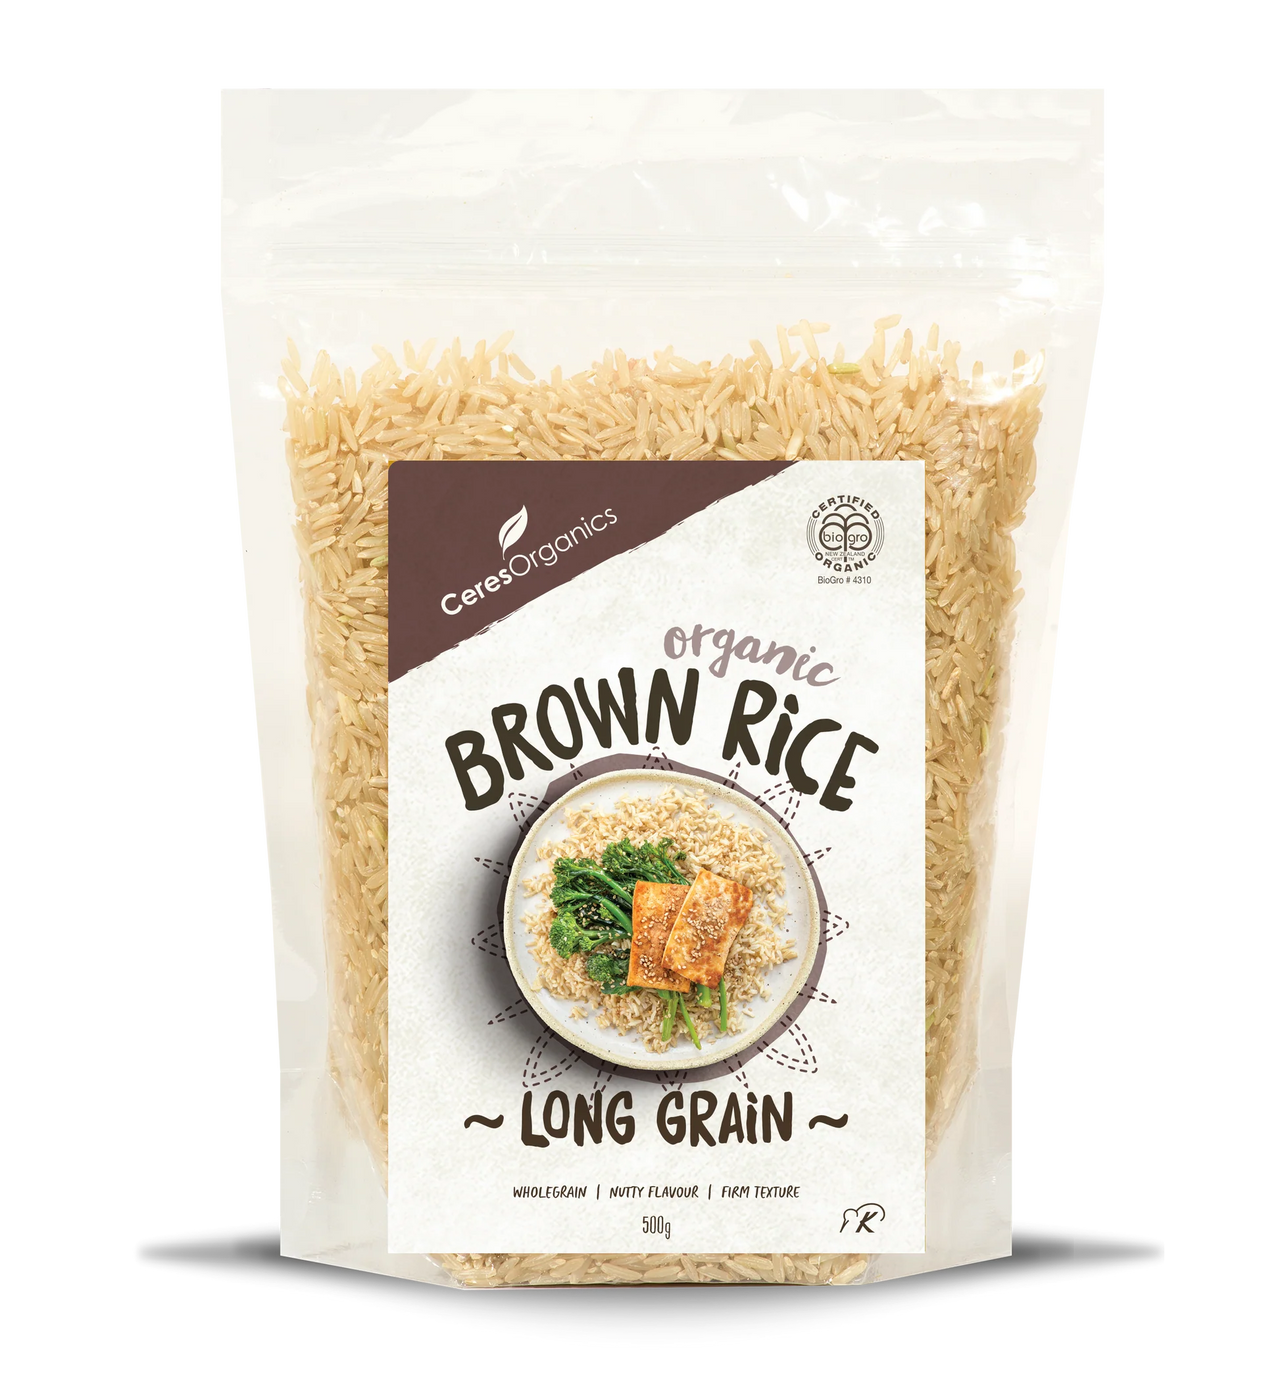 Ceres Organic Brown Rice Long Grain - [500g]